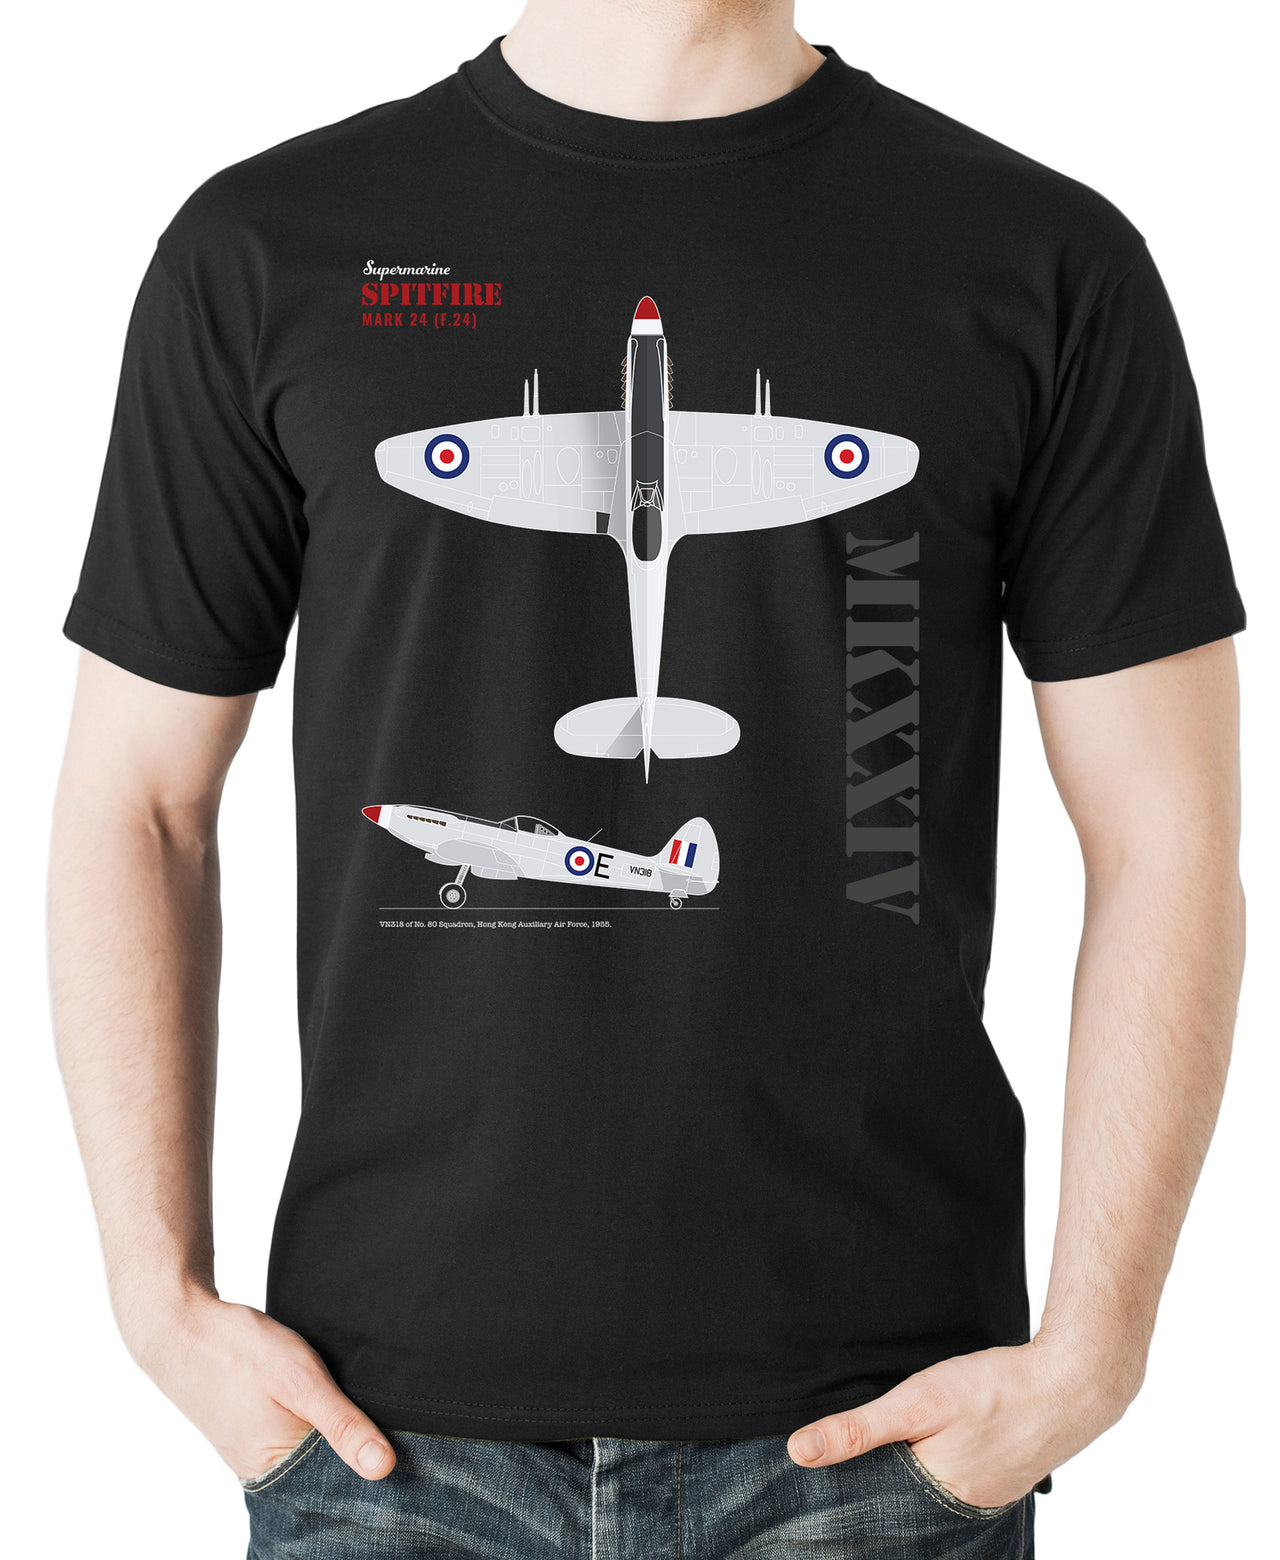 Spitfire MK 24 - T-shirt